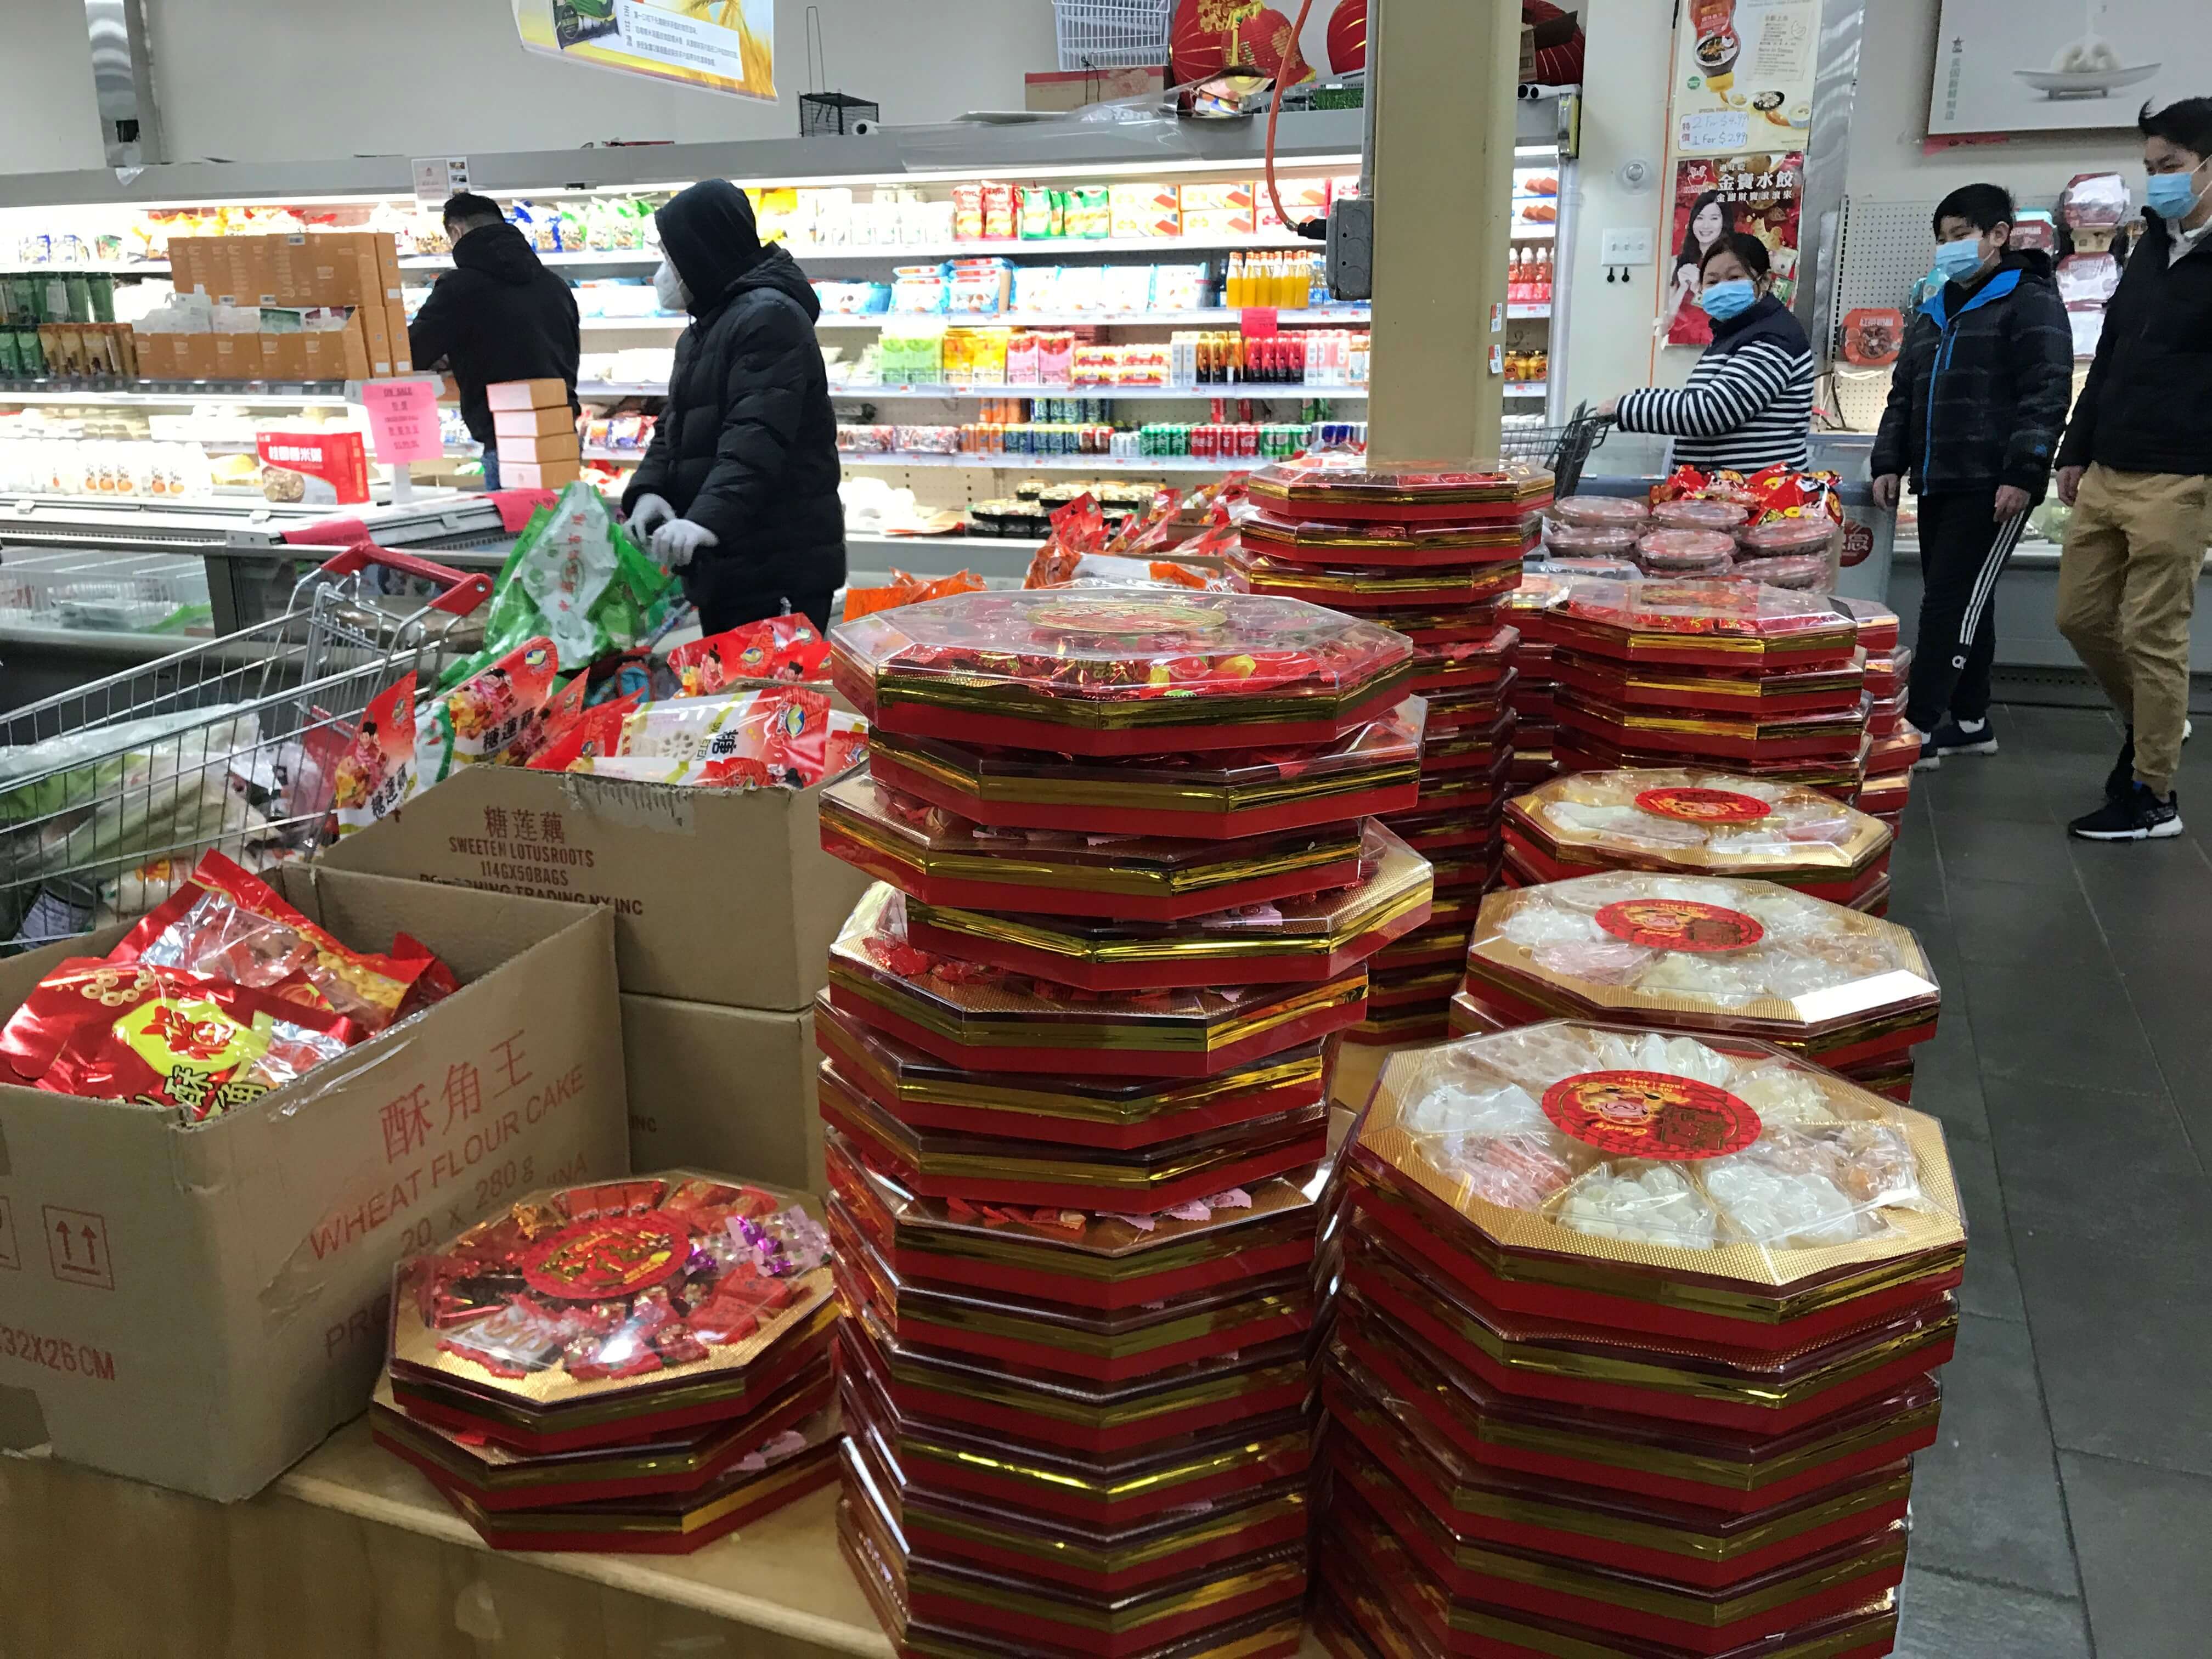 从新平价超市销售网红李子柒代言食品看海外华人饮食消费新动向